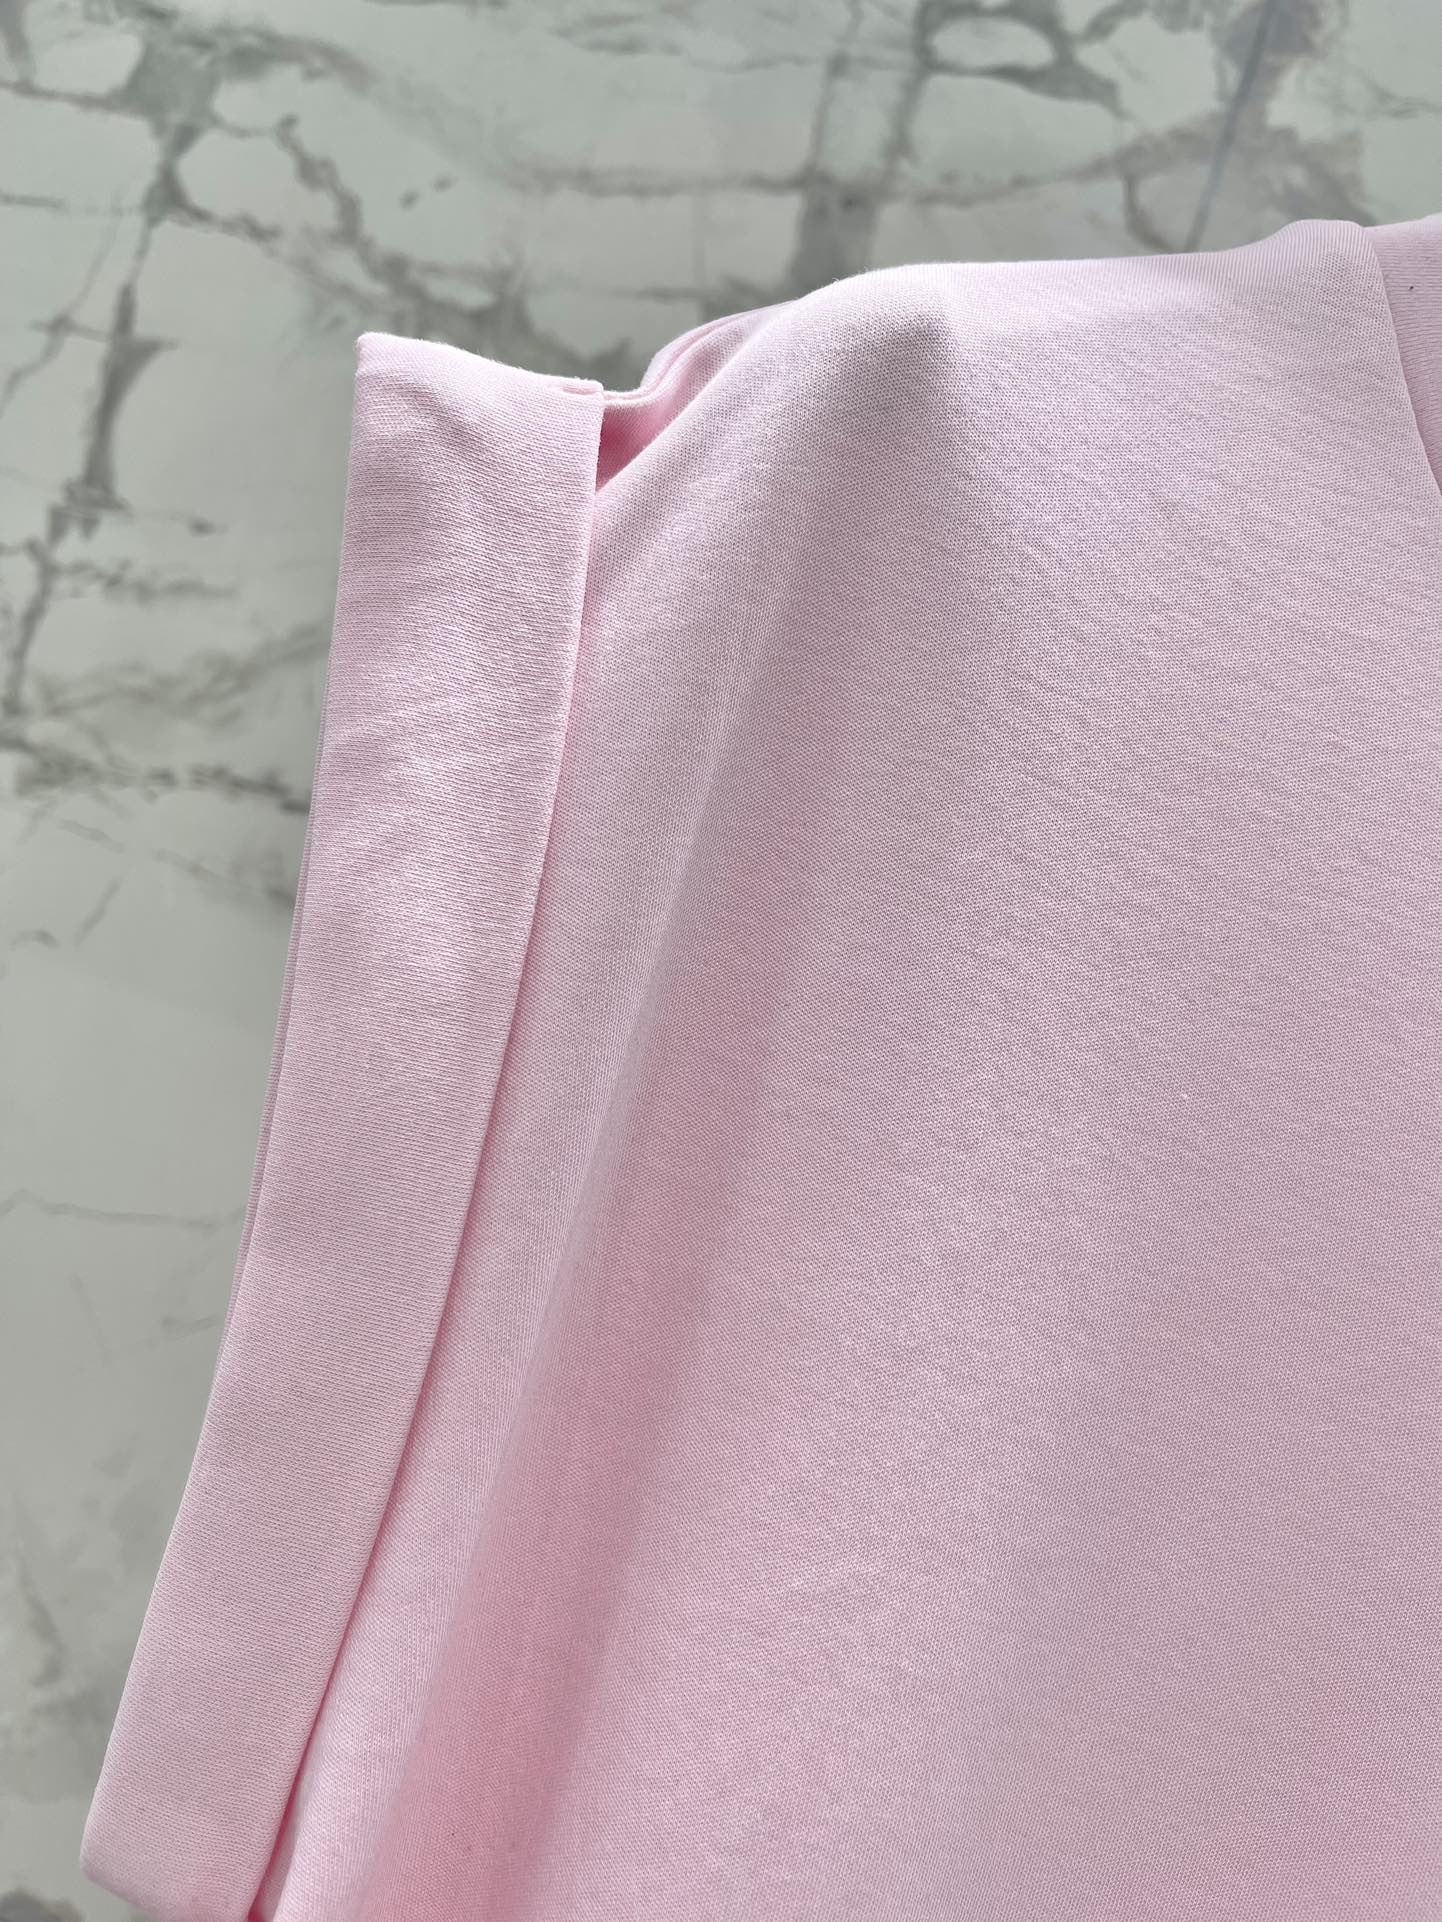 ミュウミュウスカーフスーパーコピー 柔らかい 無袖 Tシャツ トップス ファッション カジュアル 人気 シンプル ピンク_8